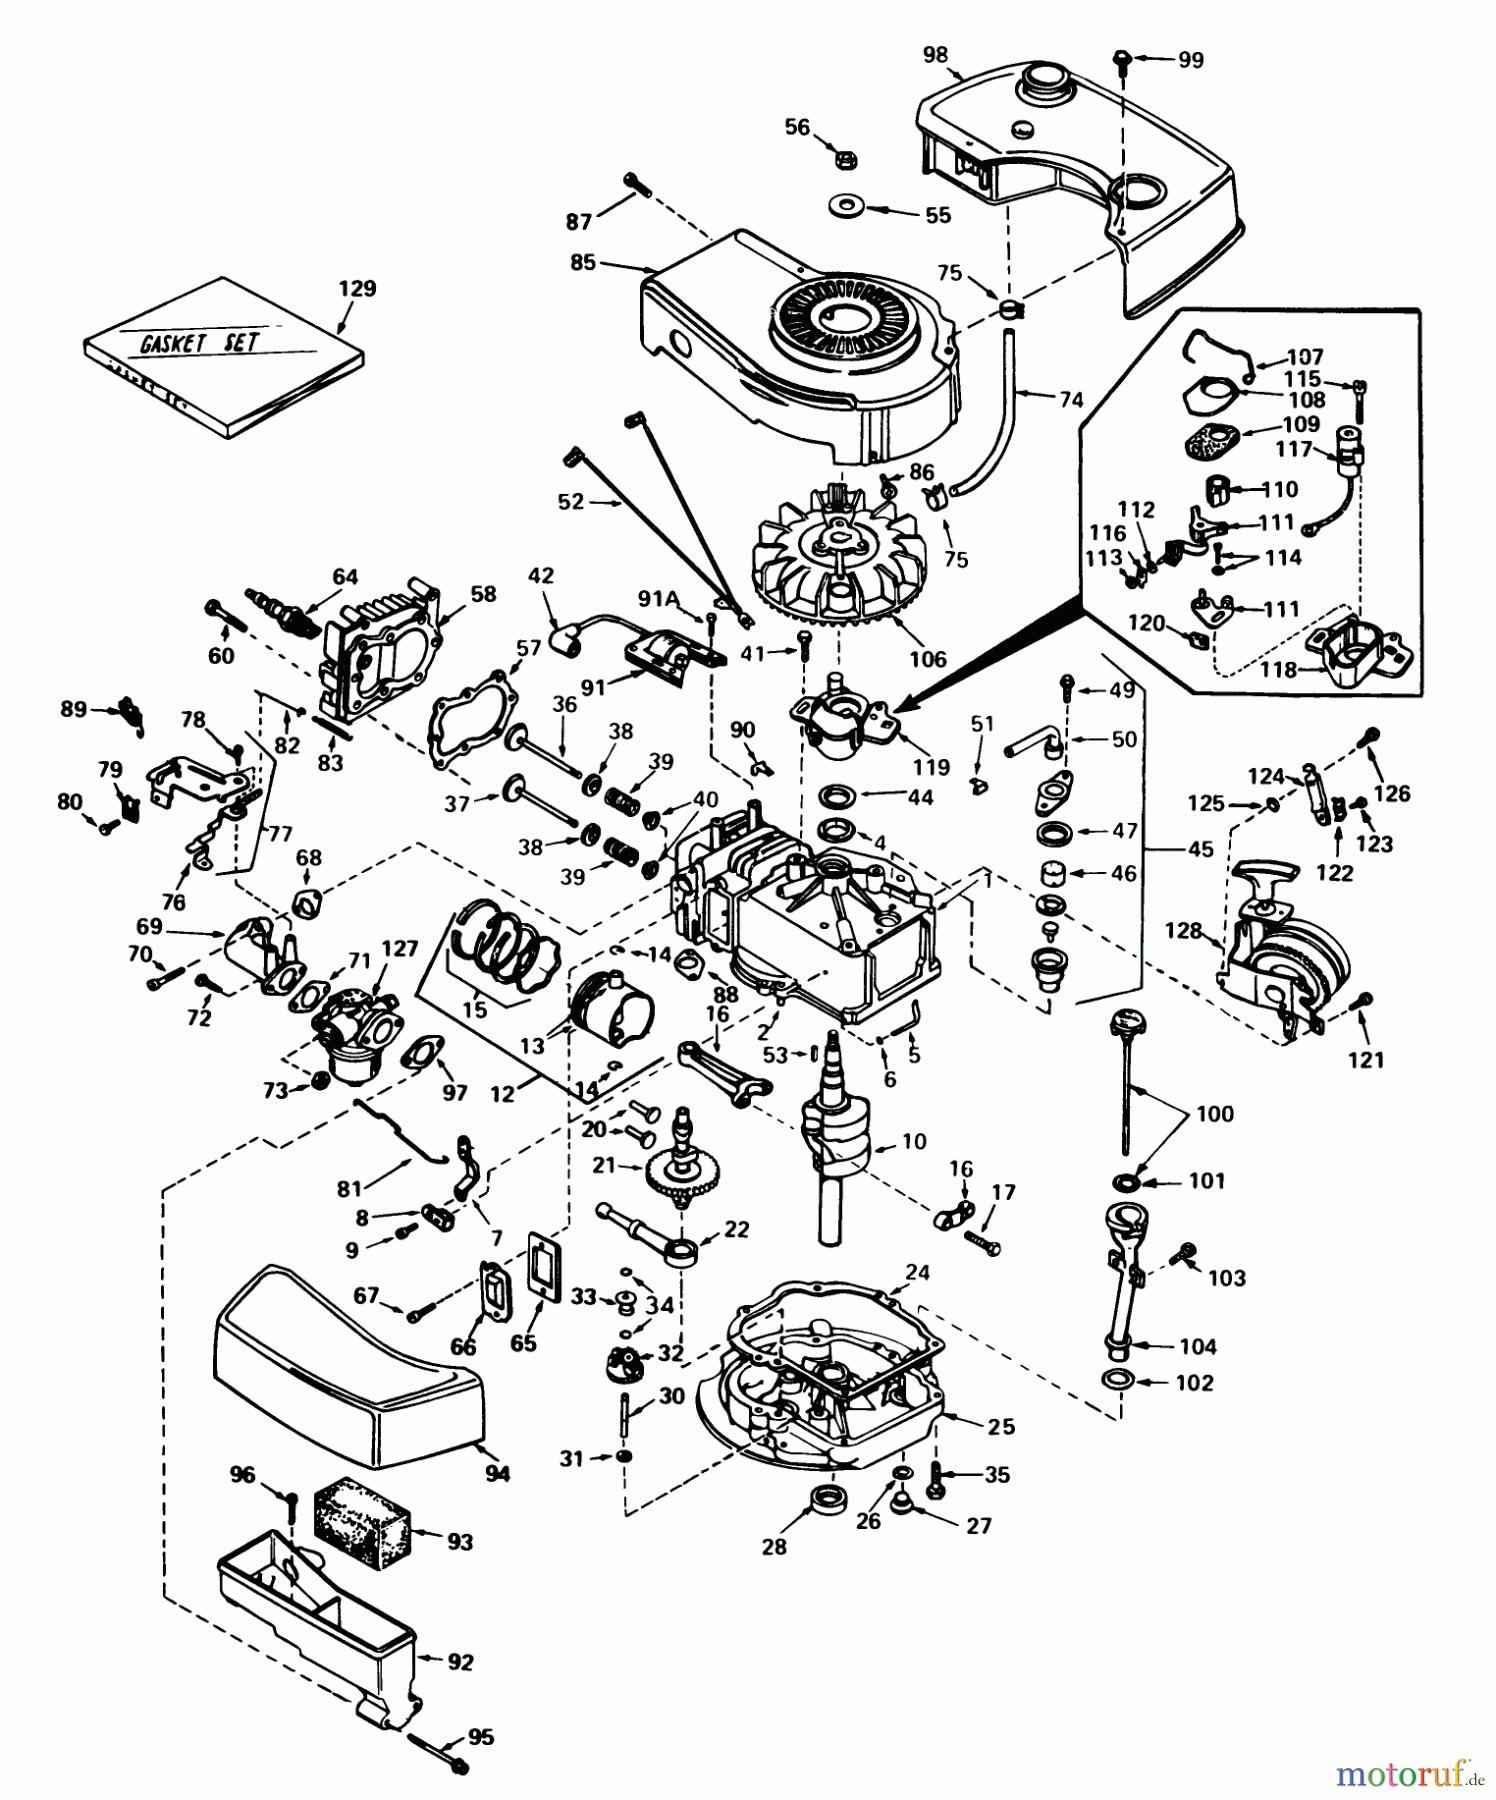  Toro Neu Mowers, Walk-Behind Seite 1 16297 - Toro Lawnmower, 1980 (0000001-0999999) ENGINE TECUMSEH MODEL NO. TNT 100-10071C